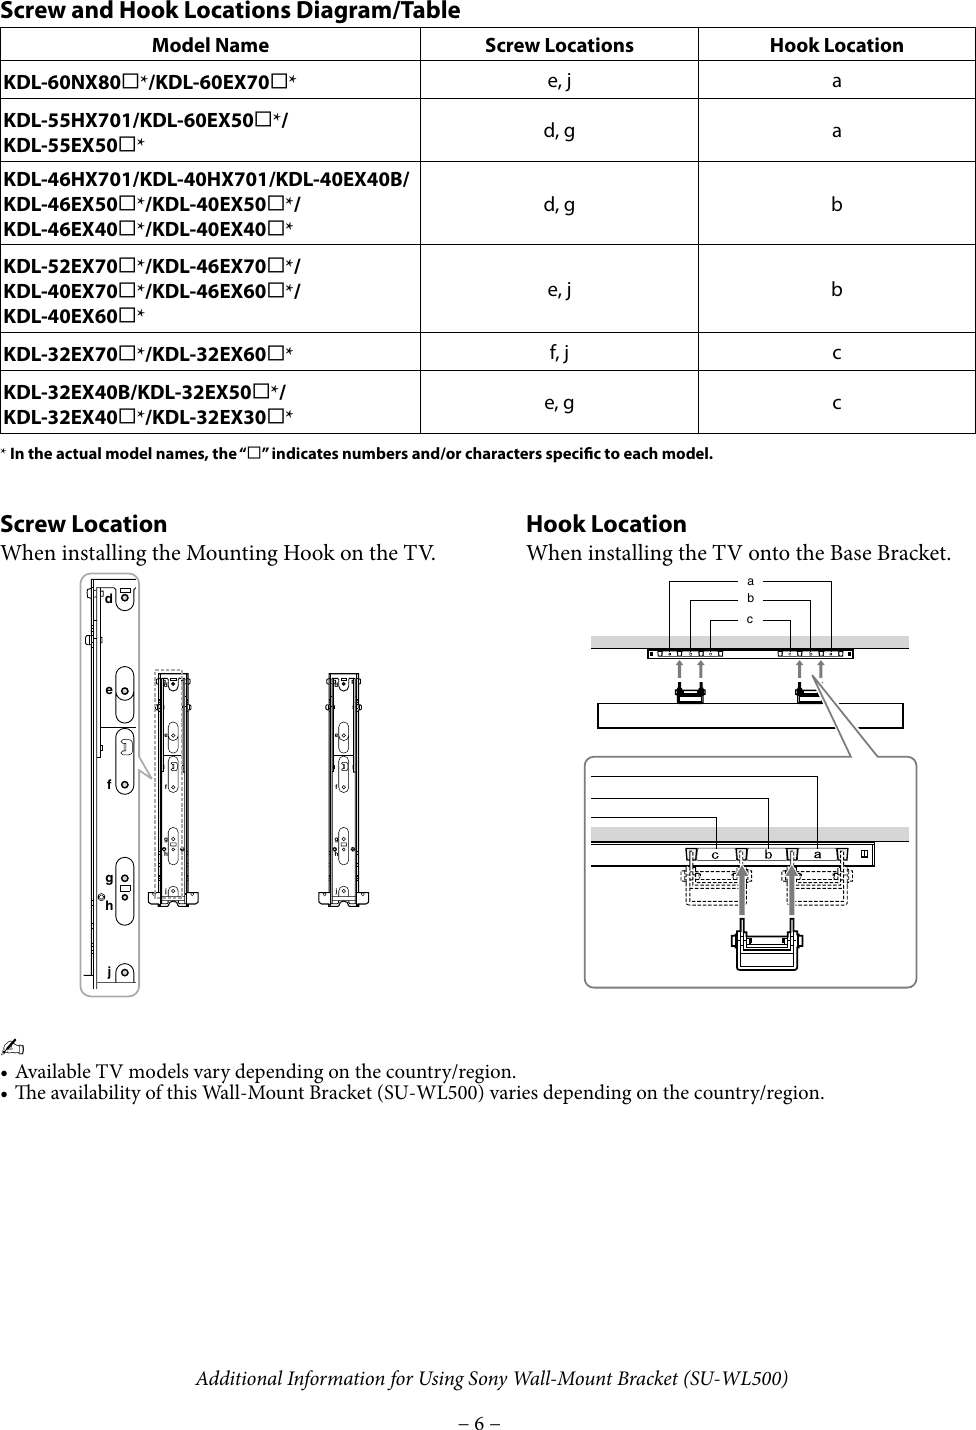 Page 6 of 8 - Sony Sony-Wall-Mount-Bracket-Su-Wl500-Users-Manual- SU-WL500  Sony-wall-mount-bracket-su-wl500-users-manual